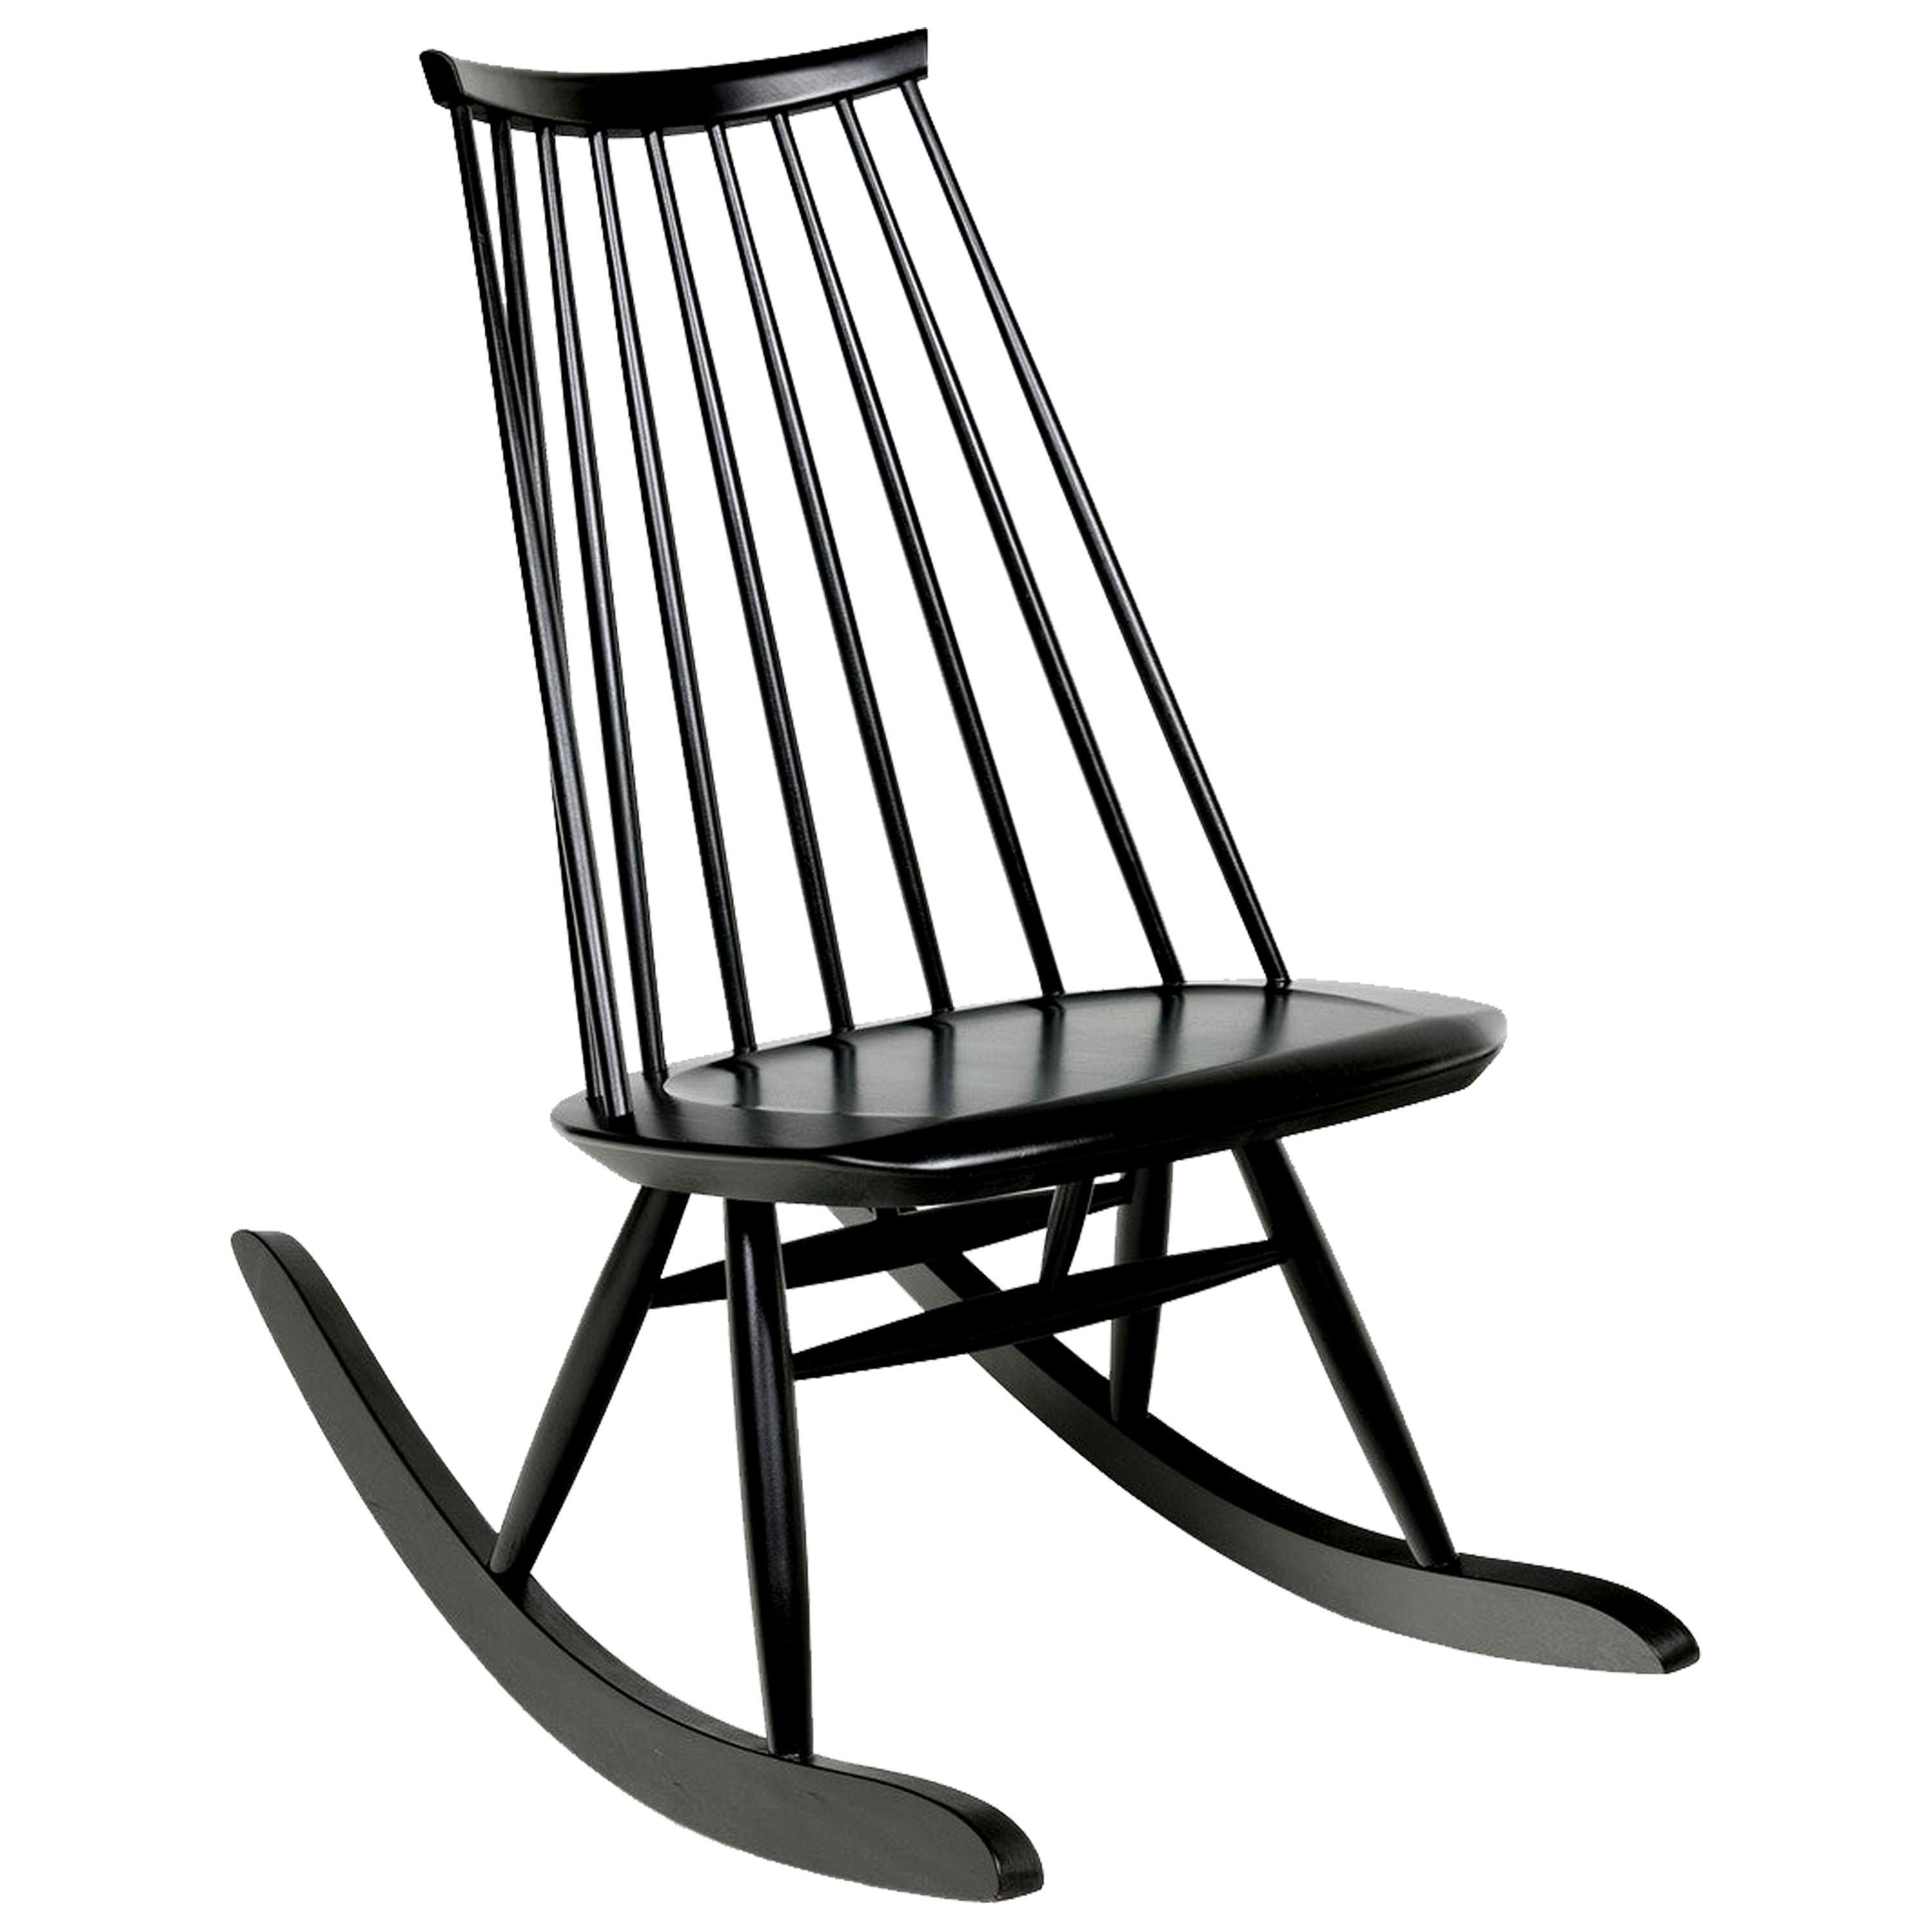 Mademoiselle Rocking Chair in Black by Ilmari Tapiovaara & Artek